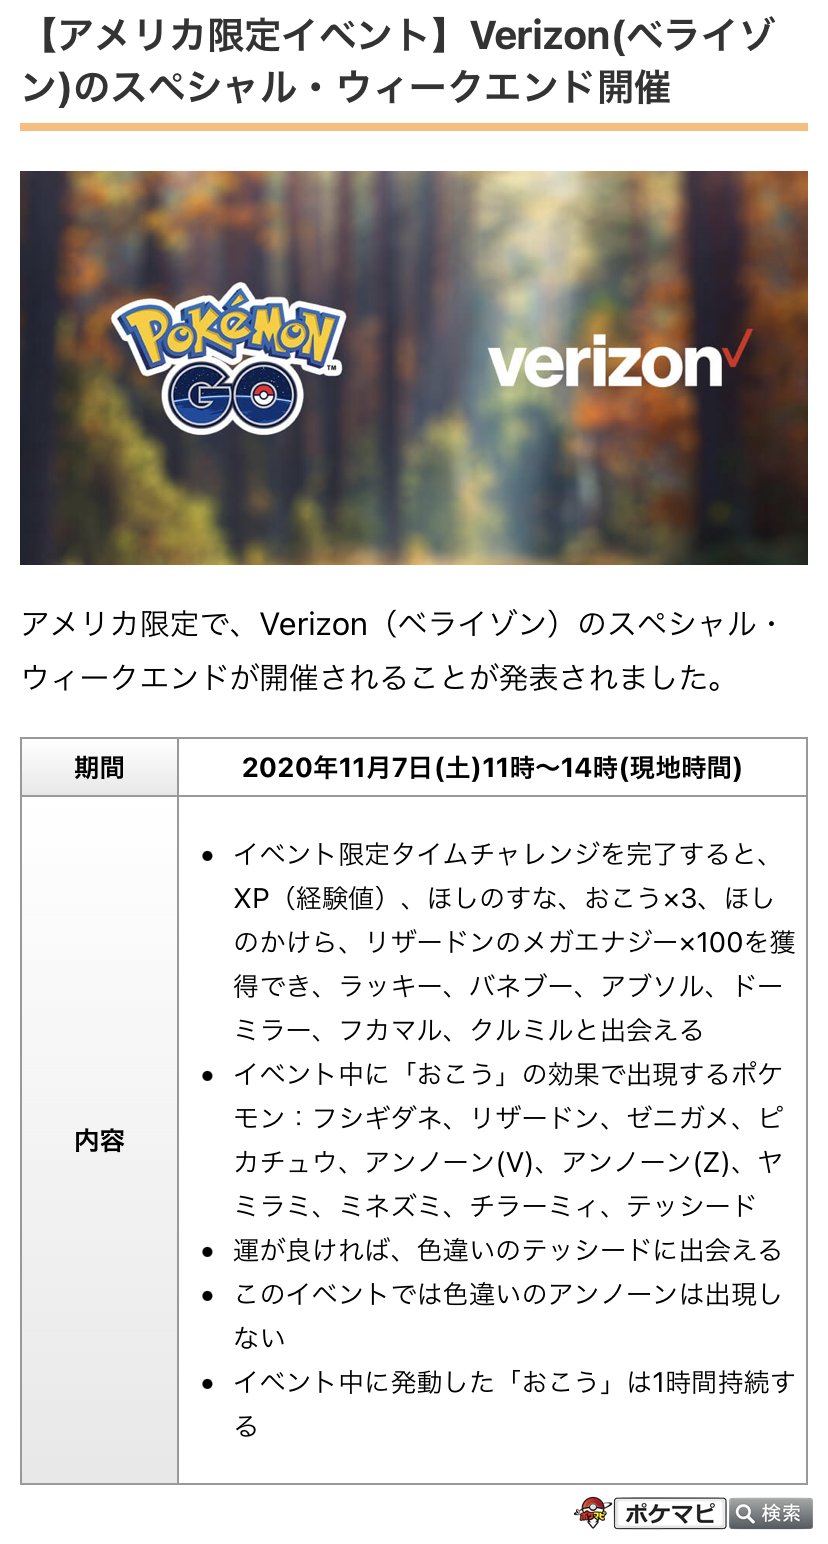 ポケモンgo攻略情報 ポケマピ アメリカ限定イベント Verizon ベライゾン のスペシャル ウィークエンドの開催 限定着せ替えアイテムの追加などについて発表されています イベント日時 年11月7日 土 11時 14時 現地時間 詳細